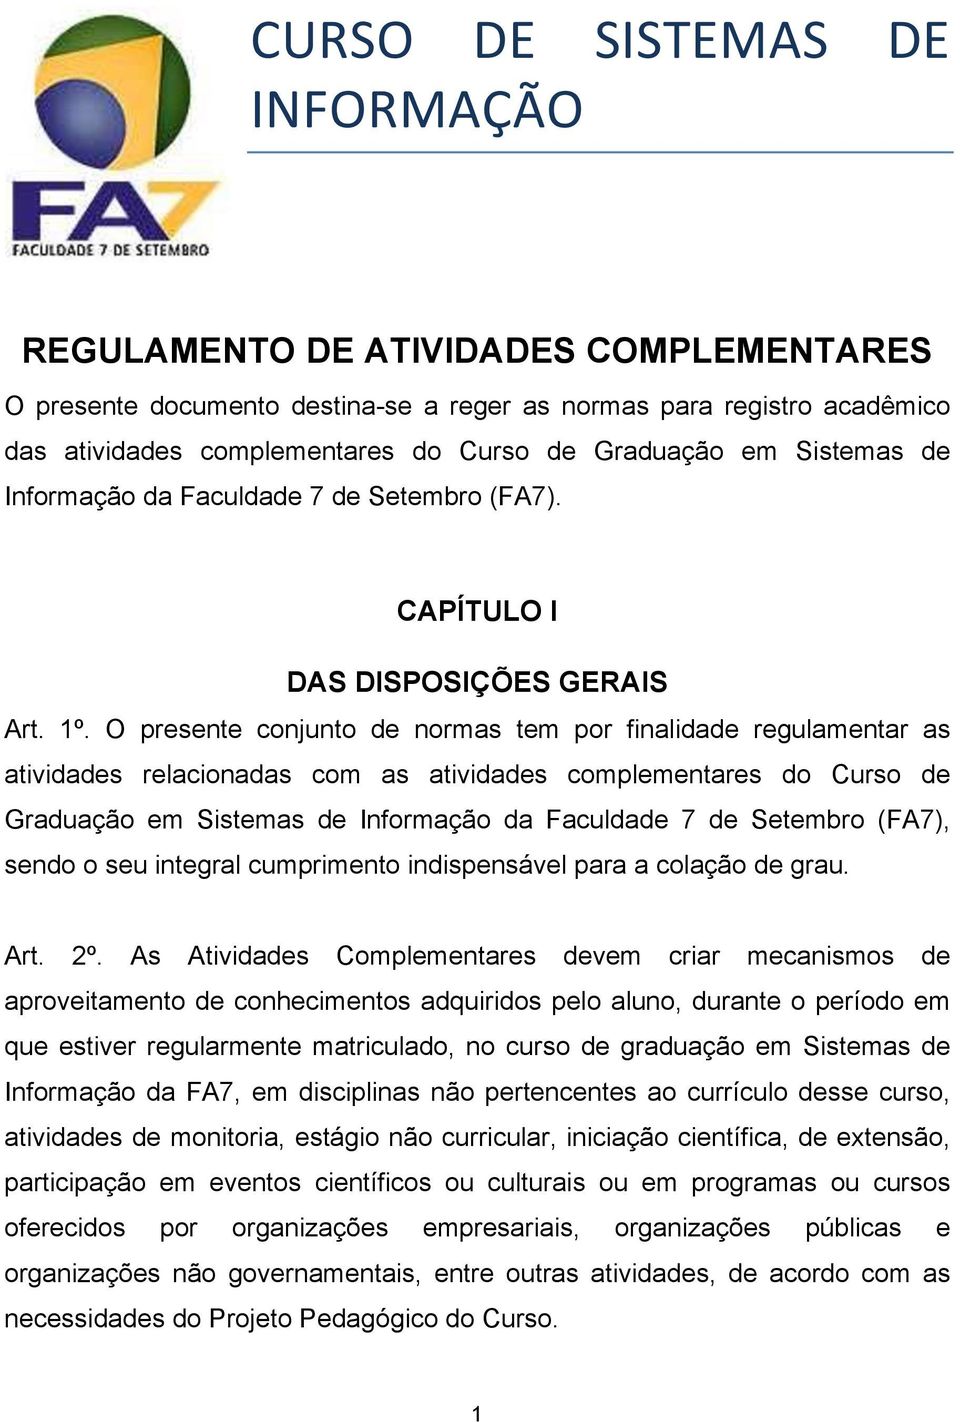 O presente conjunto de normas tem por finalidade regulamentar as atividades relacionadas com as atividades complementares do Curso de Graduação em Sistemas de Informação da Faculdade 7 de Setembro